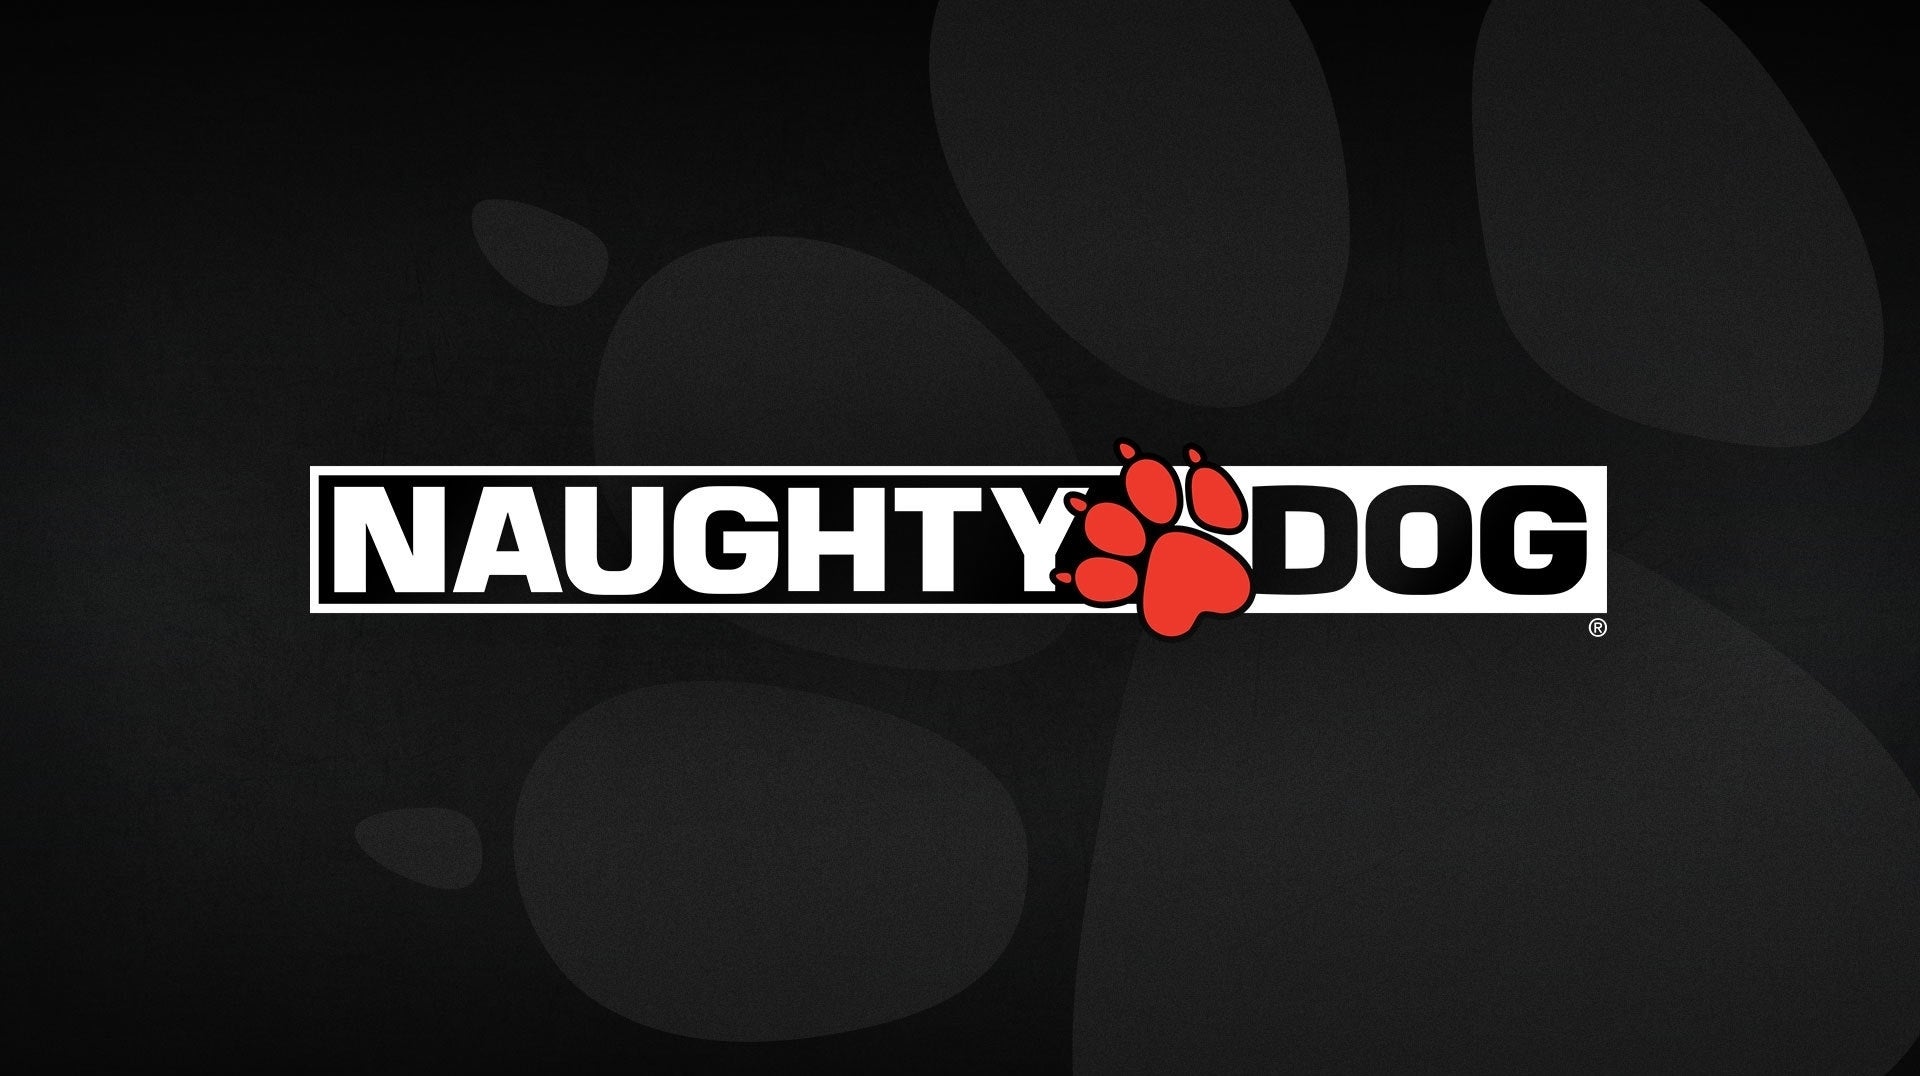 Naughty Dog は、「最愛のフランチャイズ」で新しいプロジェクトを共同開発しました。